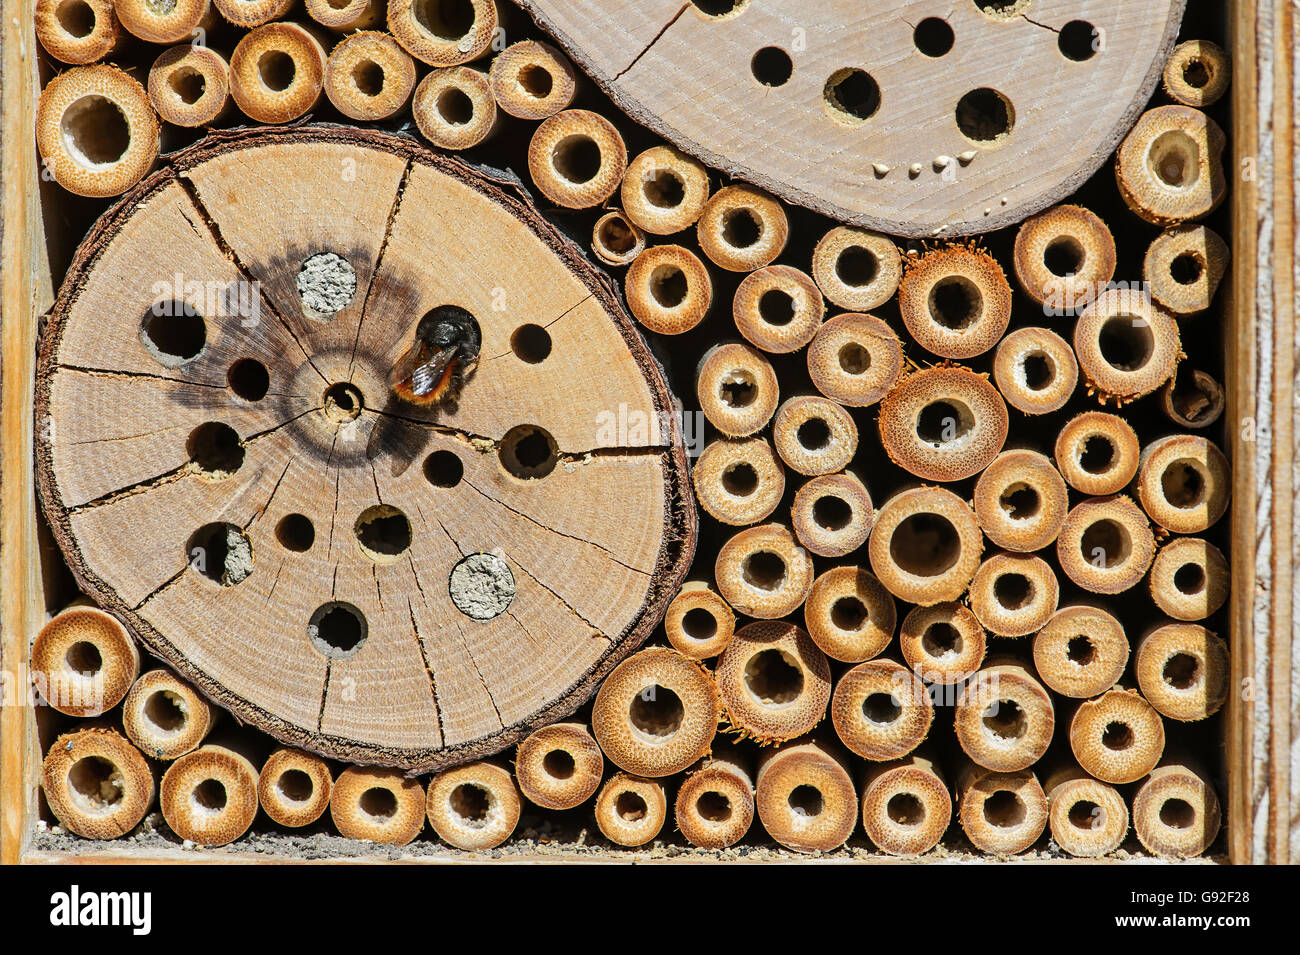 Teilansicht des ein Bienenhotel, künstliche Nester Hilfsmittel, bietet Schutz und nisten Einrichtungen für Solitärbienen, Schweiz Stockfoto